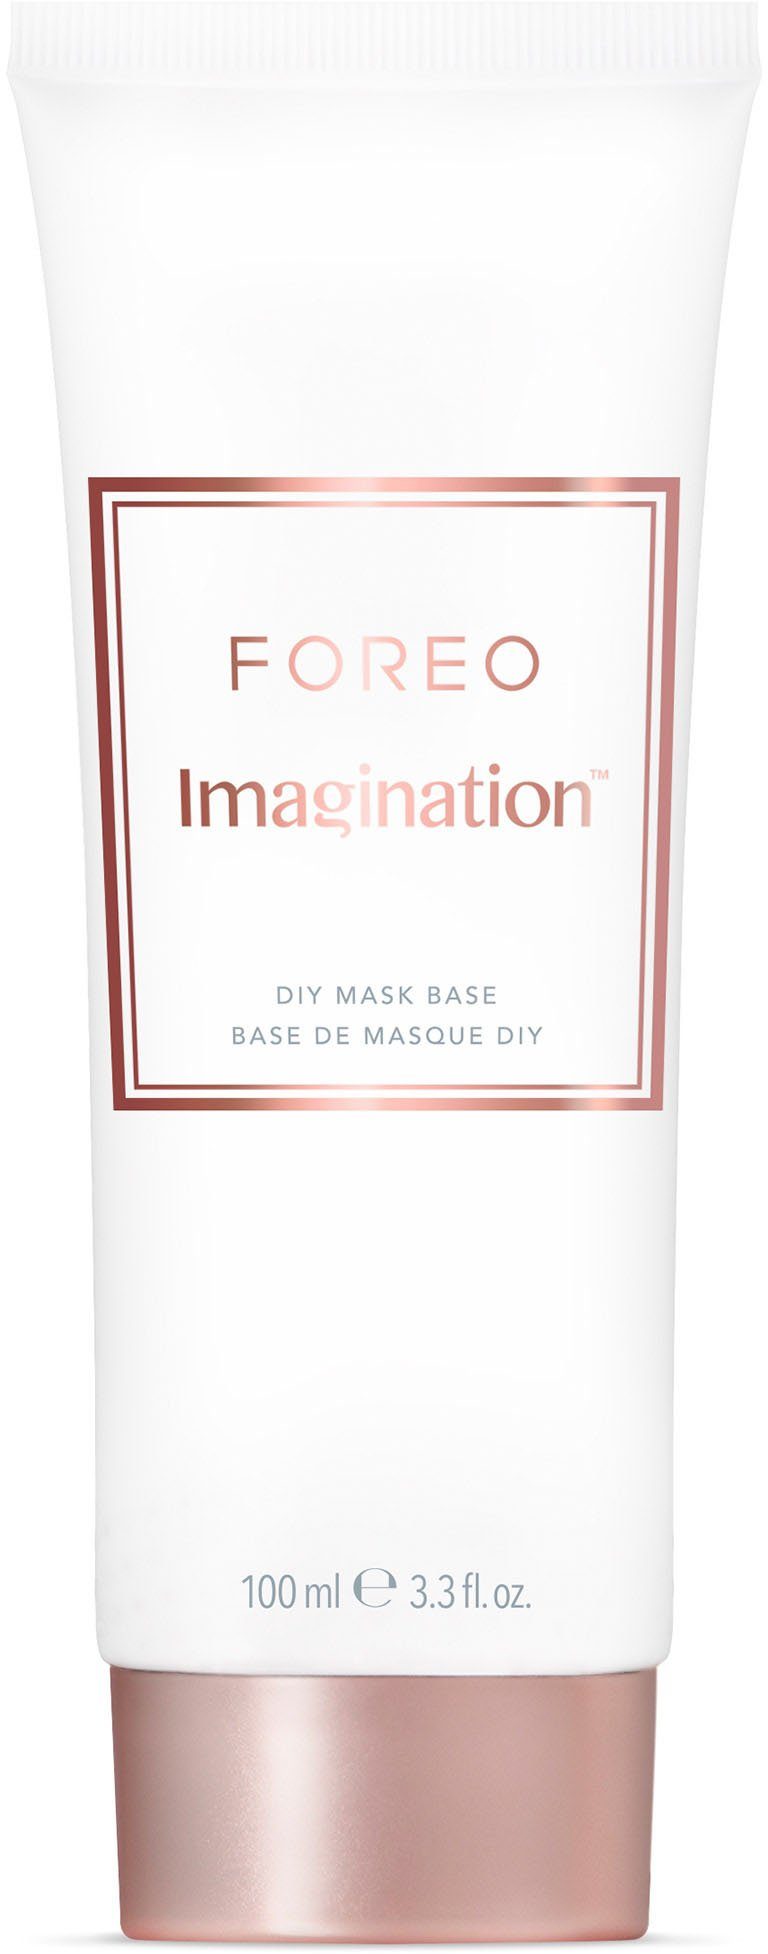 Imagination FOREO Mask Gesichtsmaske DIY Base 100ml